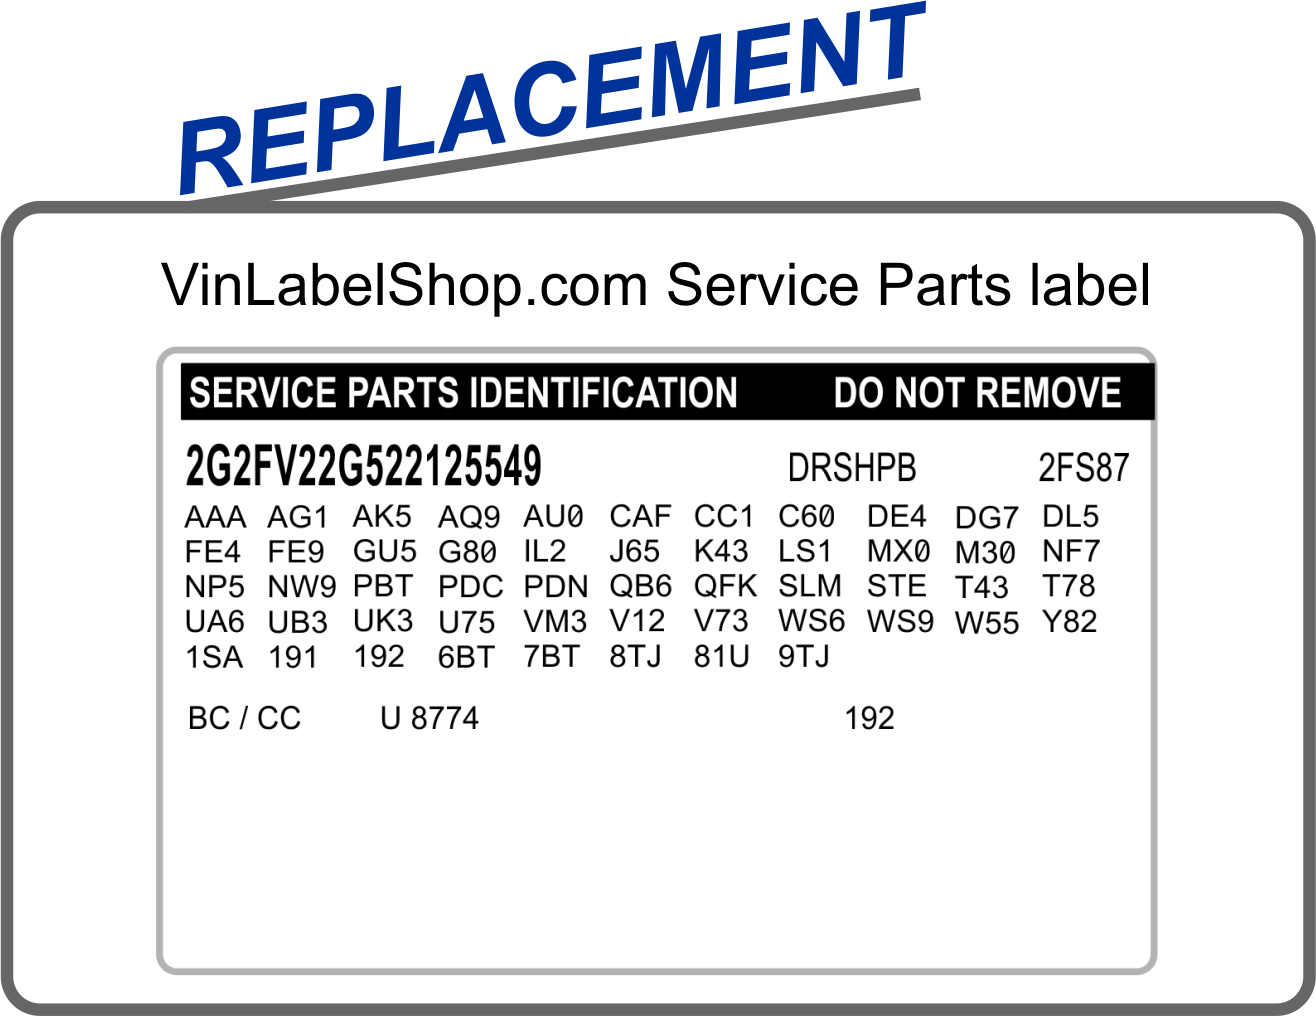 Replacement service parts vin label